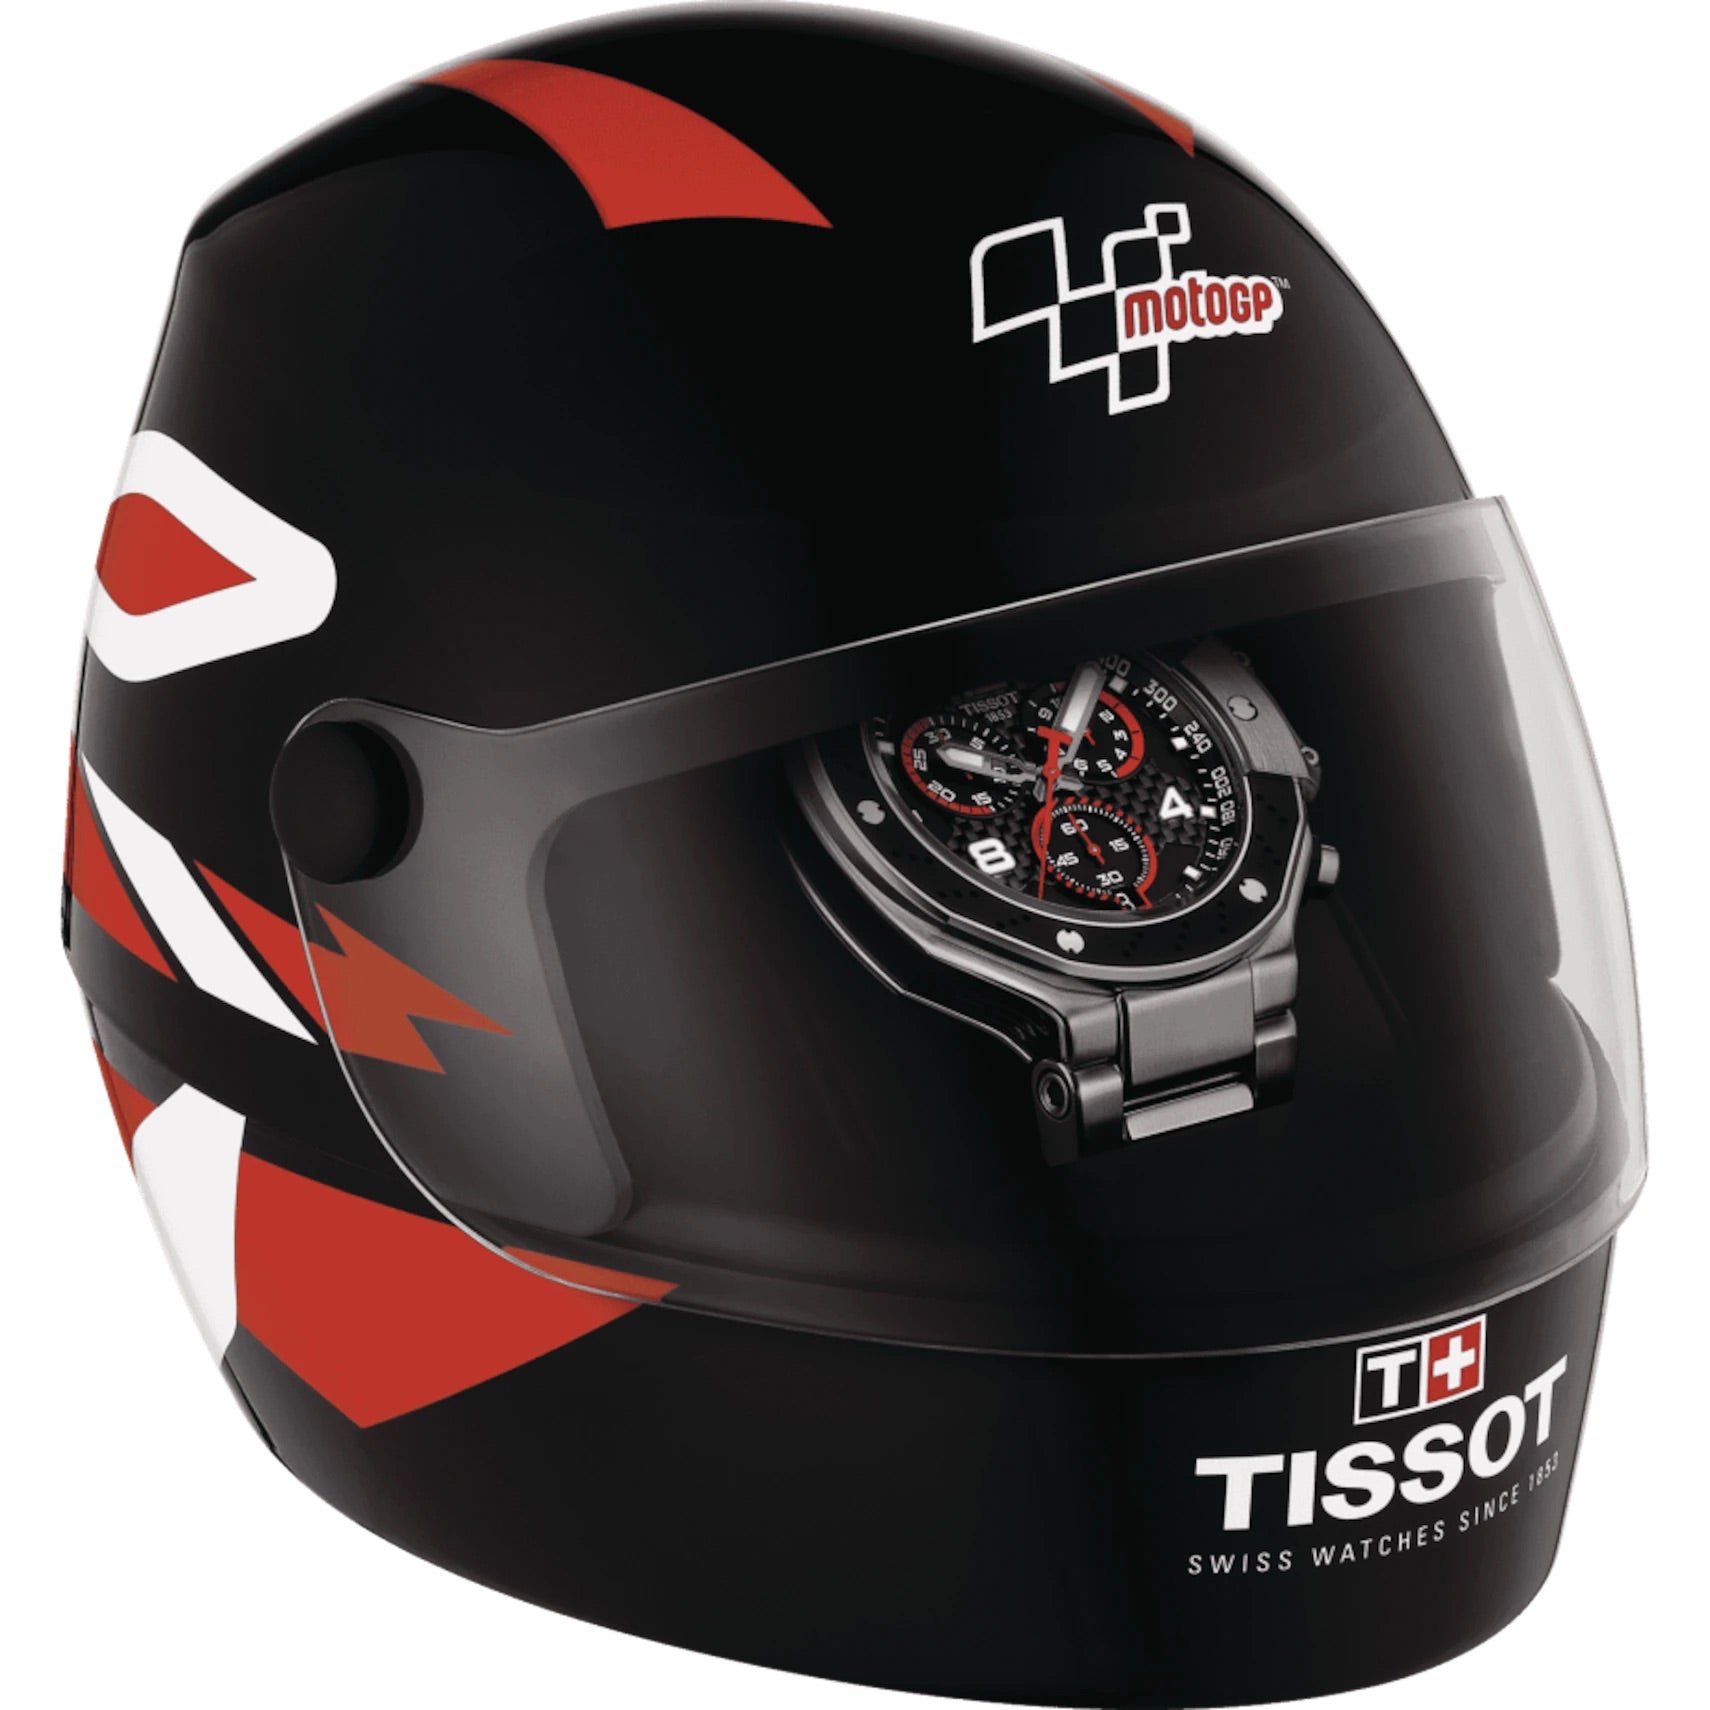 TISSOT T-RACE MOTOGP CHRONOGRAPH 2022 LIMITED EDITION 2